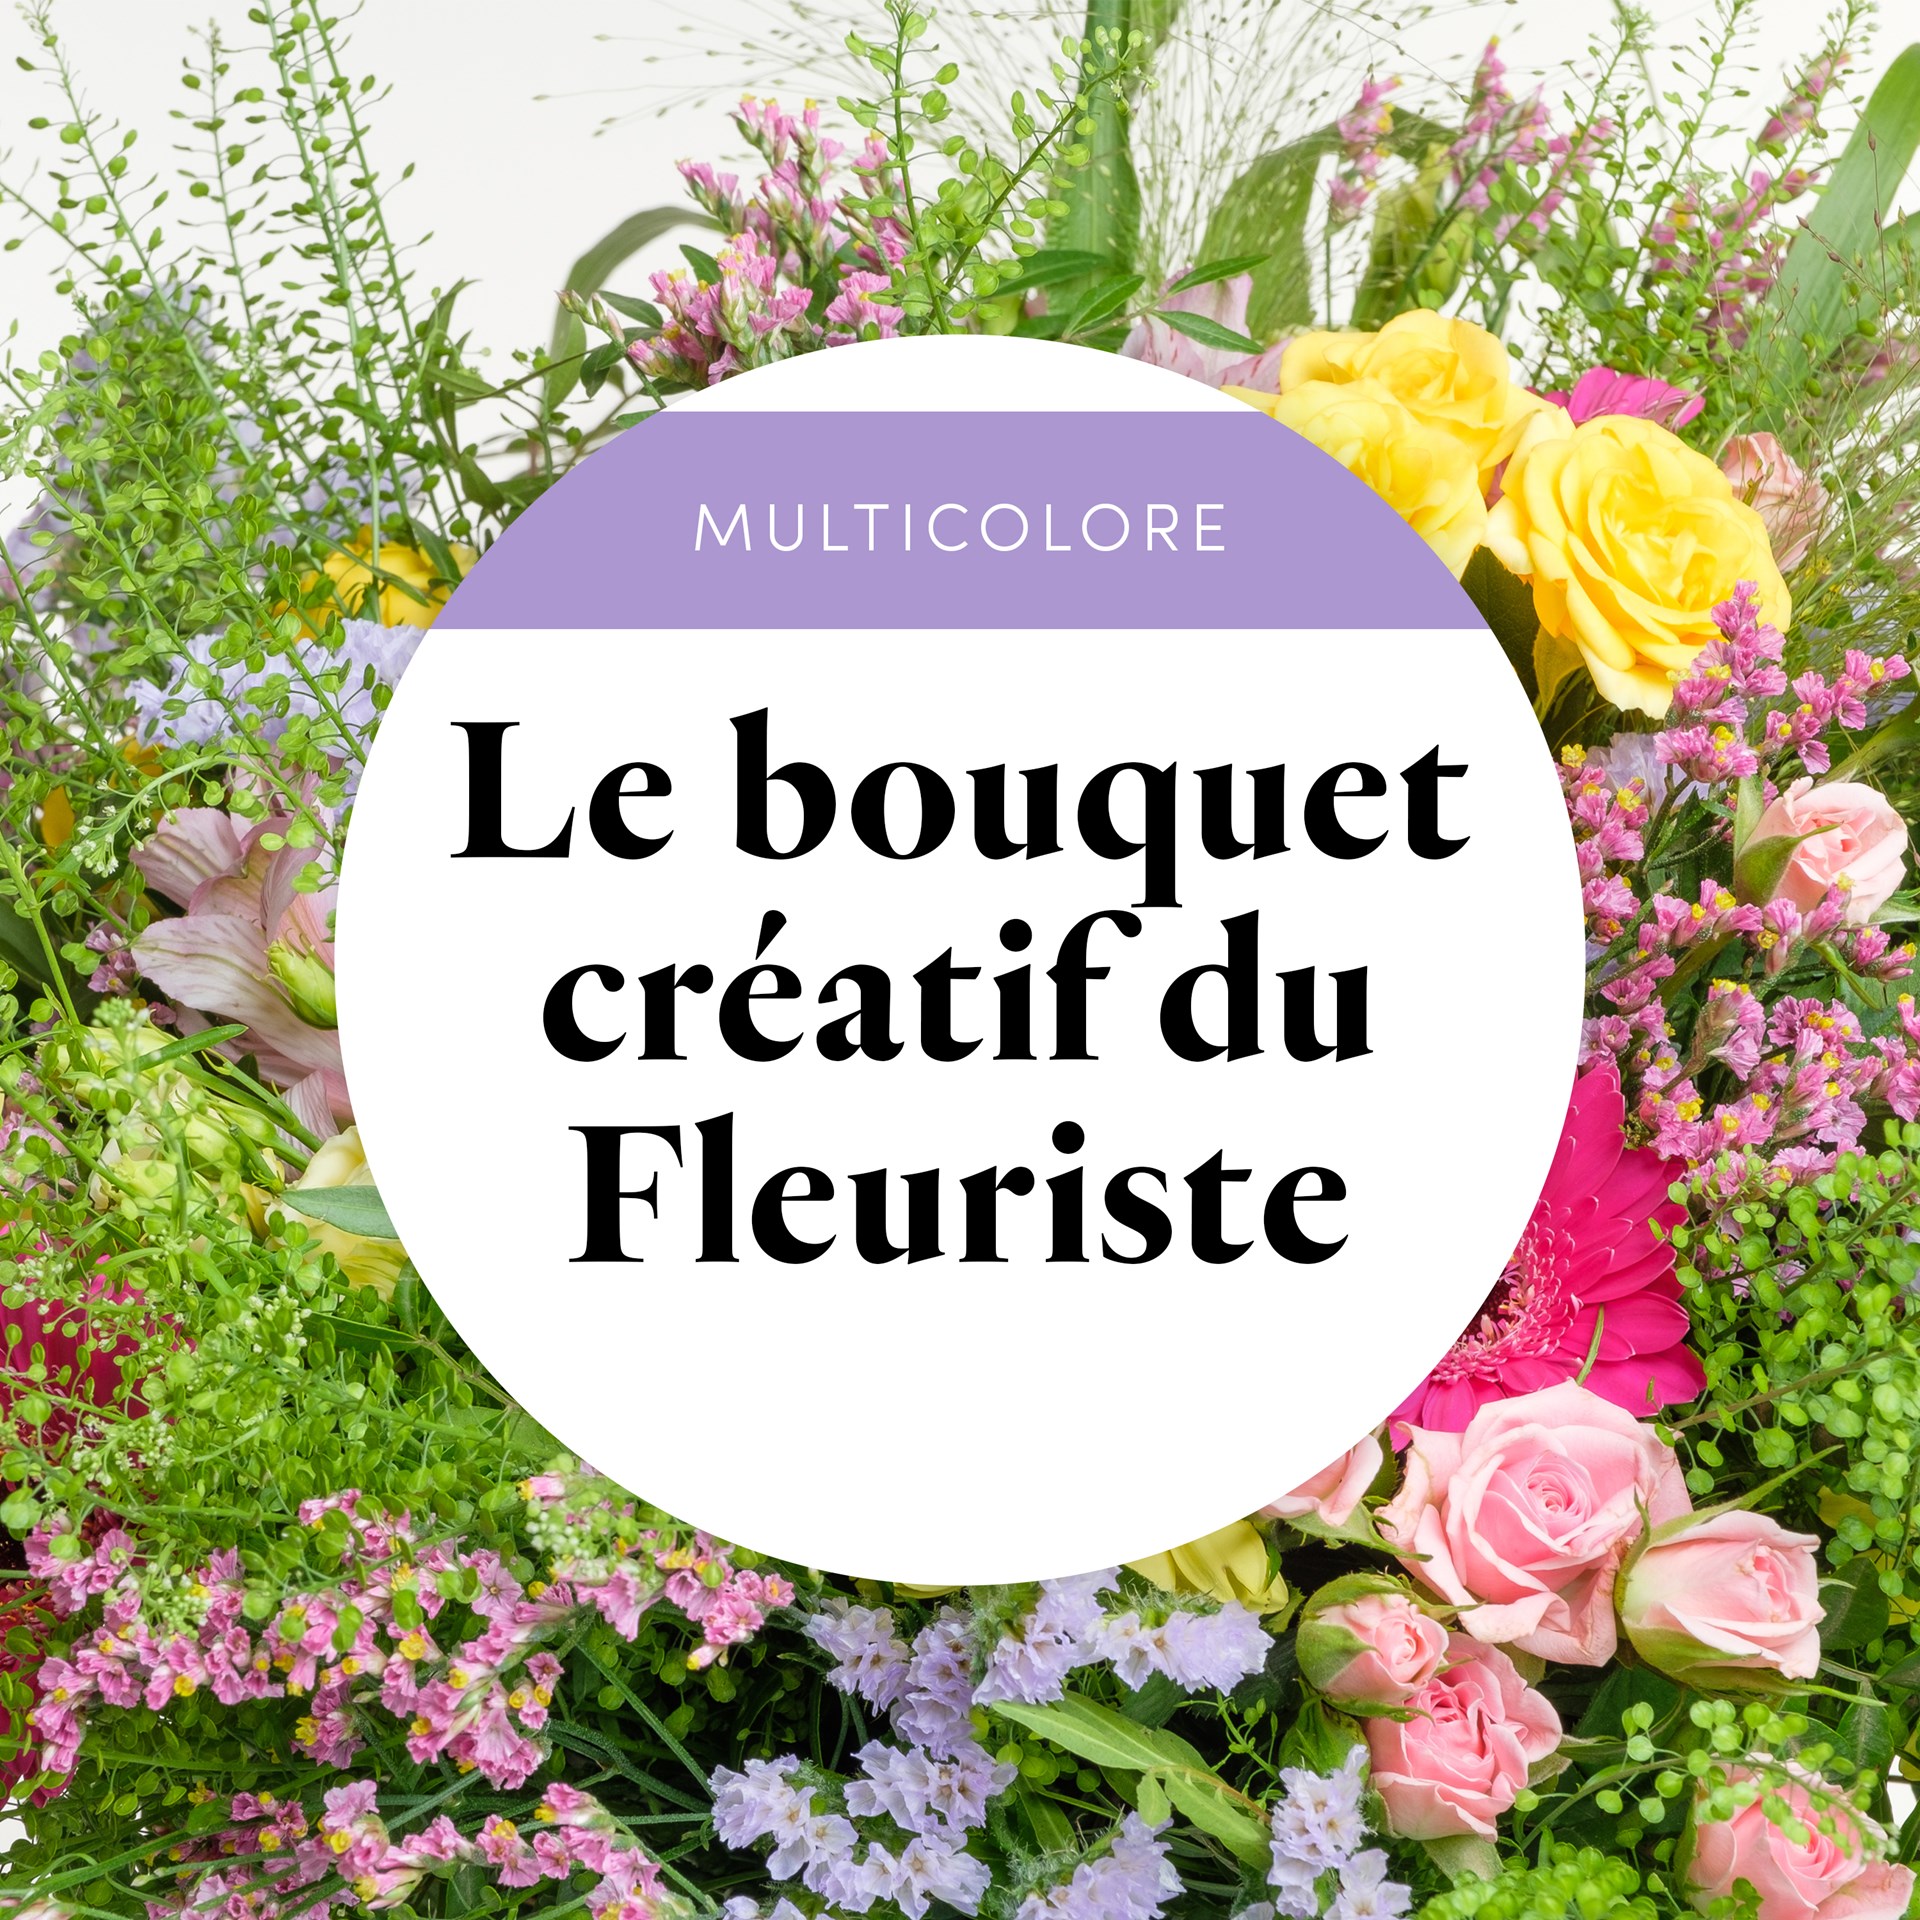 product image for Bouquet du fleuriste Multicolore